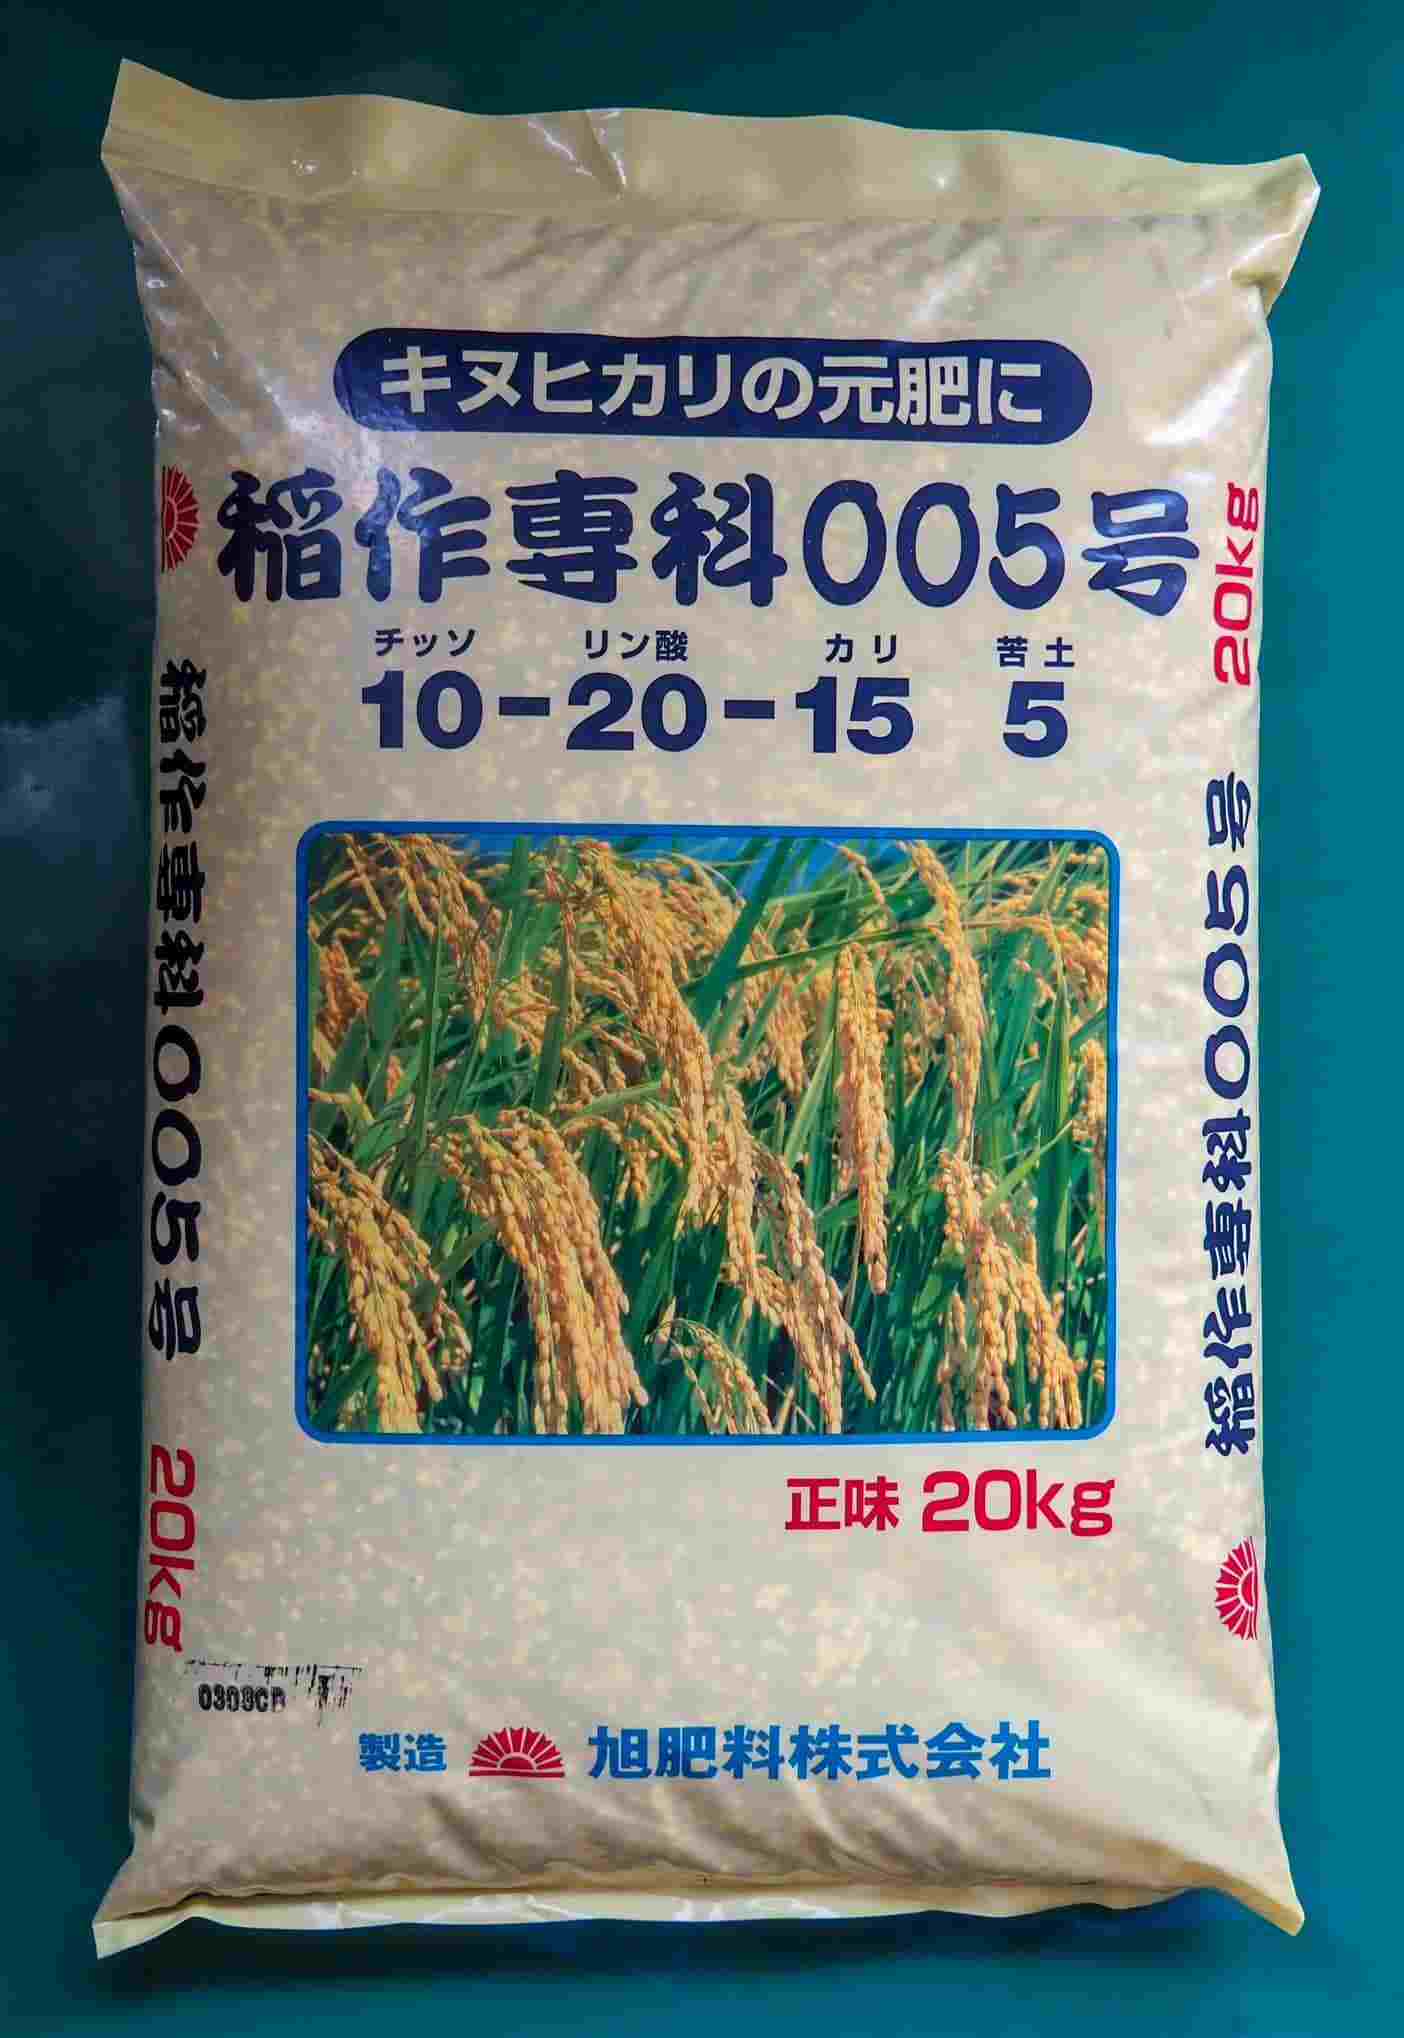 化成肥料 稲作専科005号 20kg 旭肥料 送料別